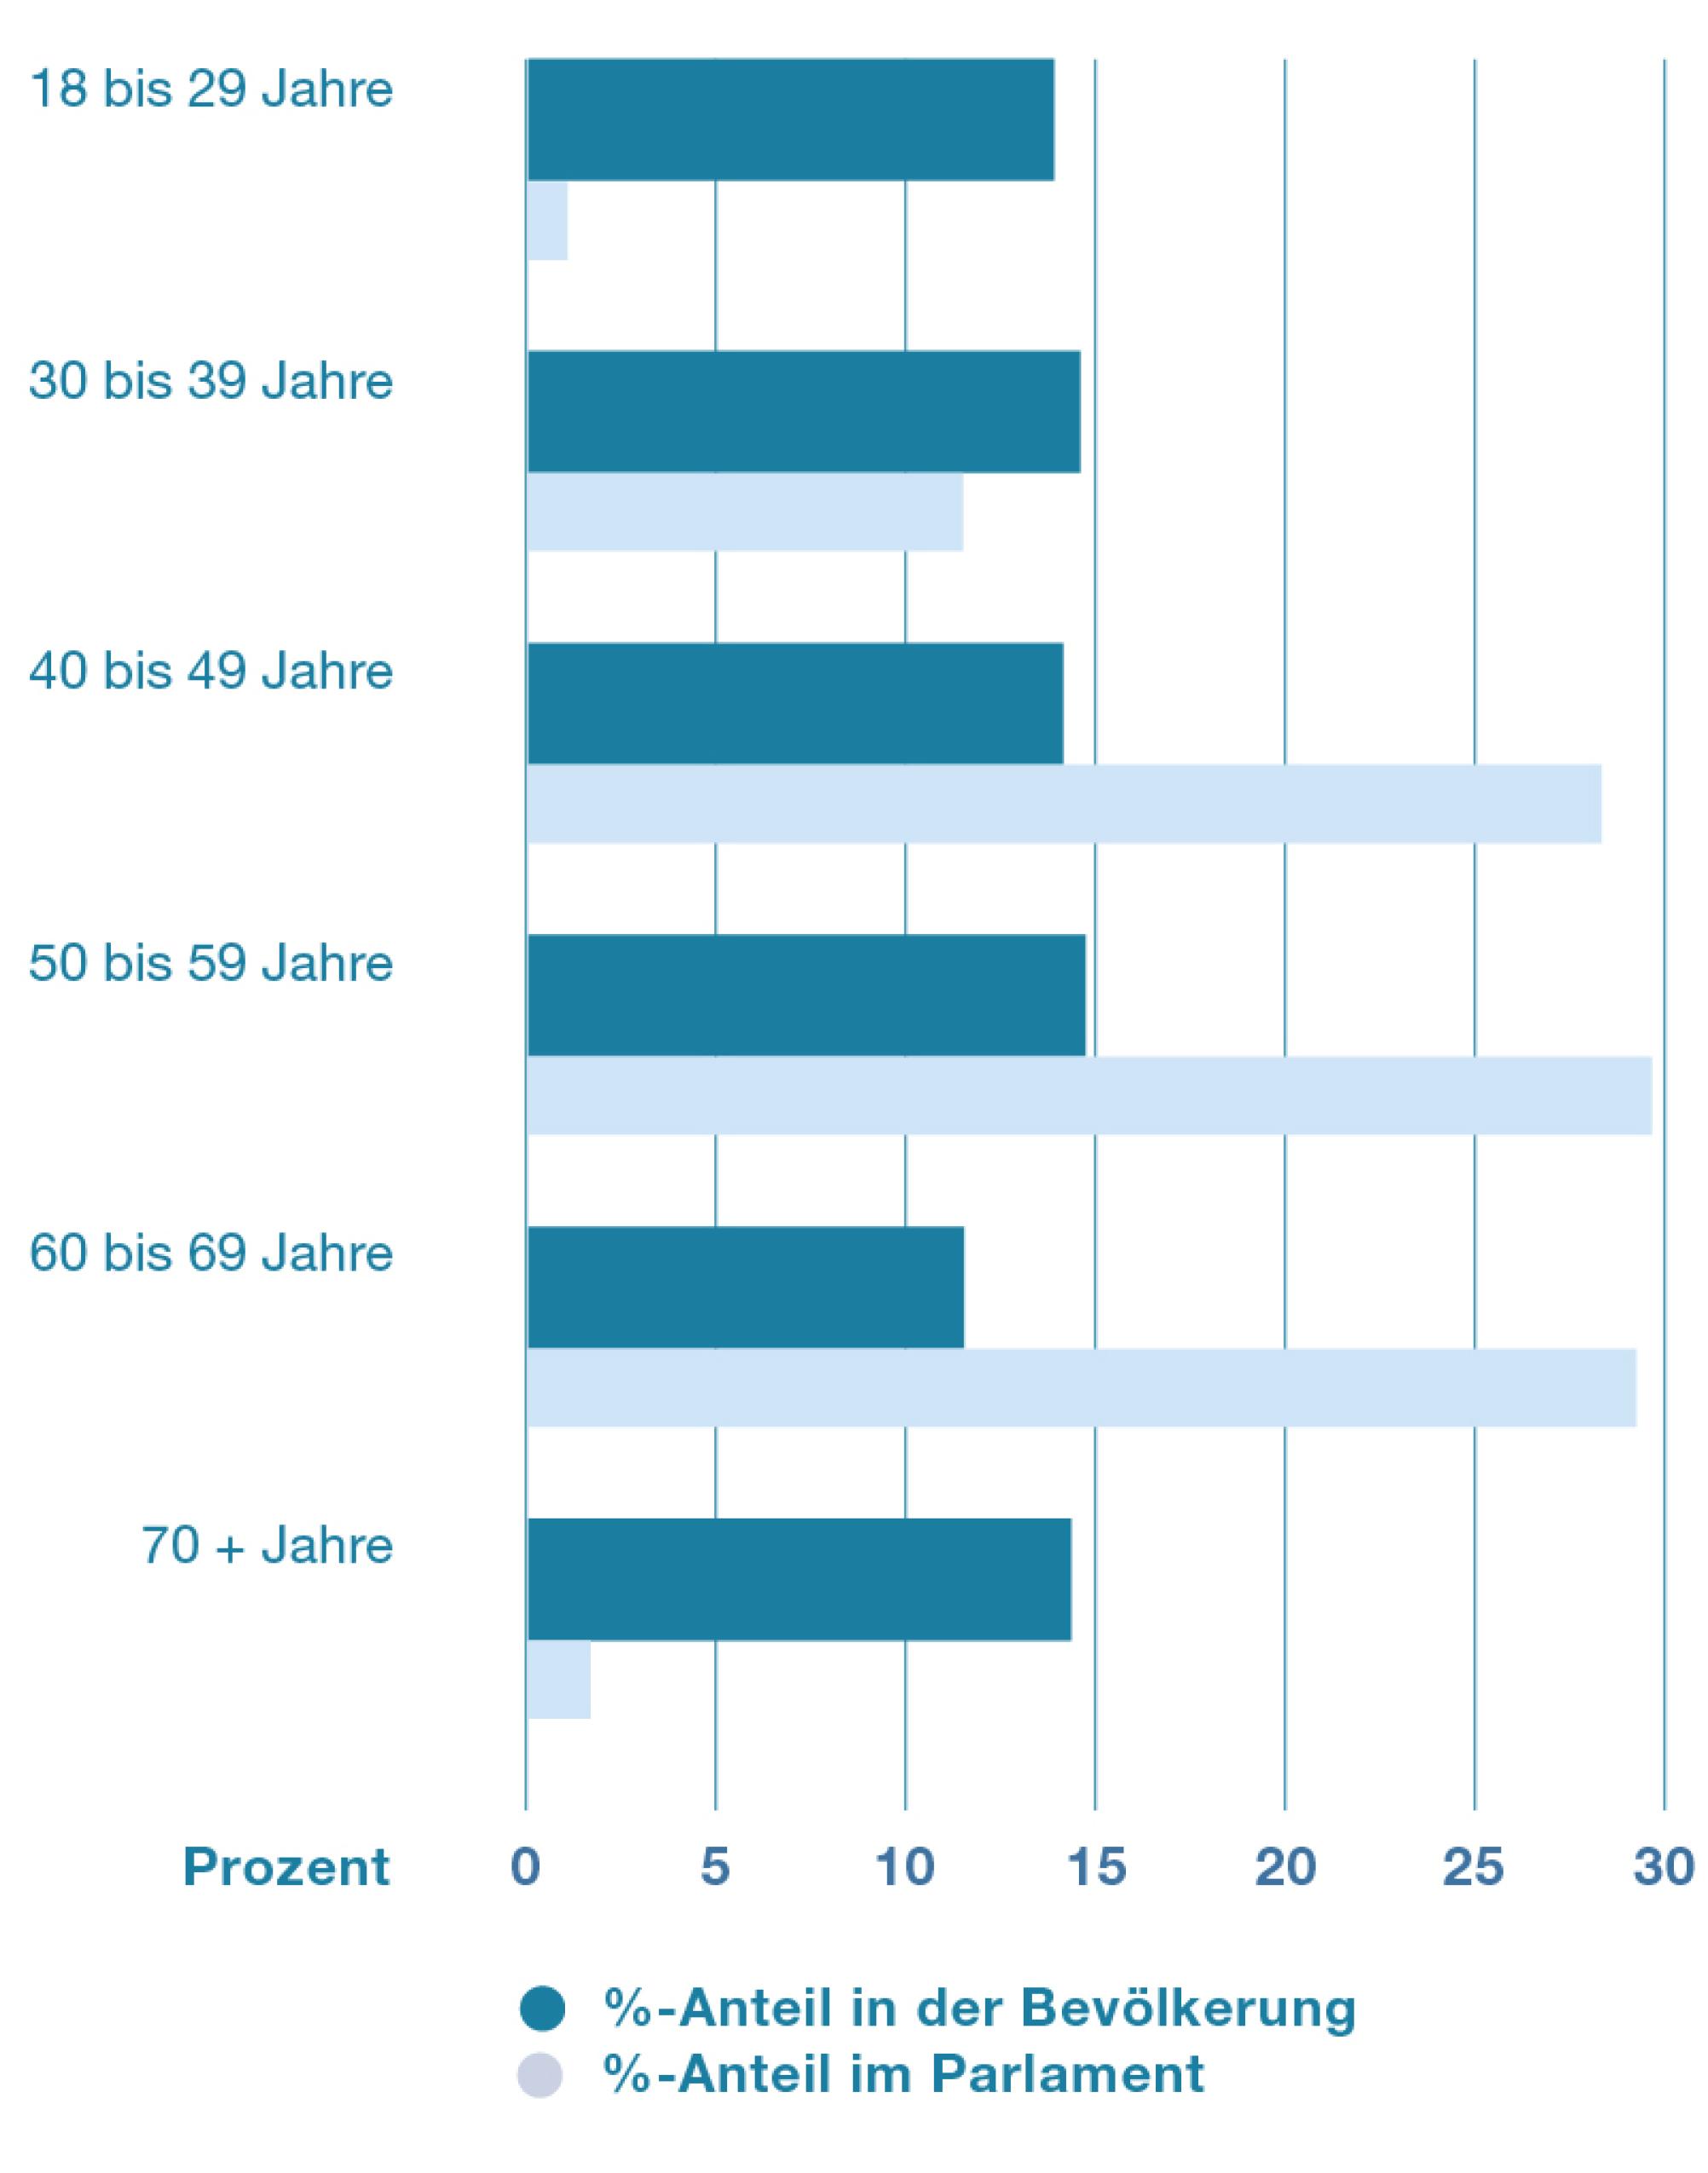 Die Grafik zeigt die Altersverteilung im Parlament und in der Bevölkerung. Sie macht klar, dass zwei Altersgruppen im Parlament deutlich untervertreten sind: Nämlich die unter 30-Jährigen und die über 70-Jährigen. Stark übervertreten sind hingegen die 50- bis 59-Jährigen.